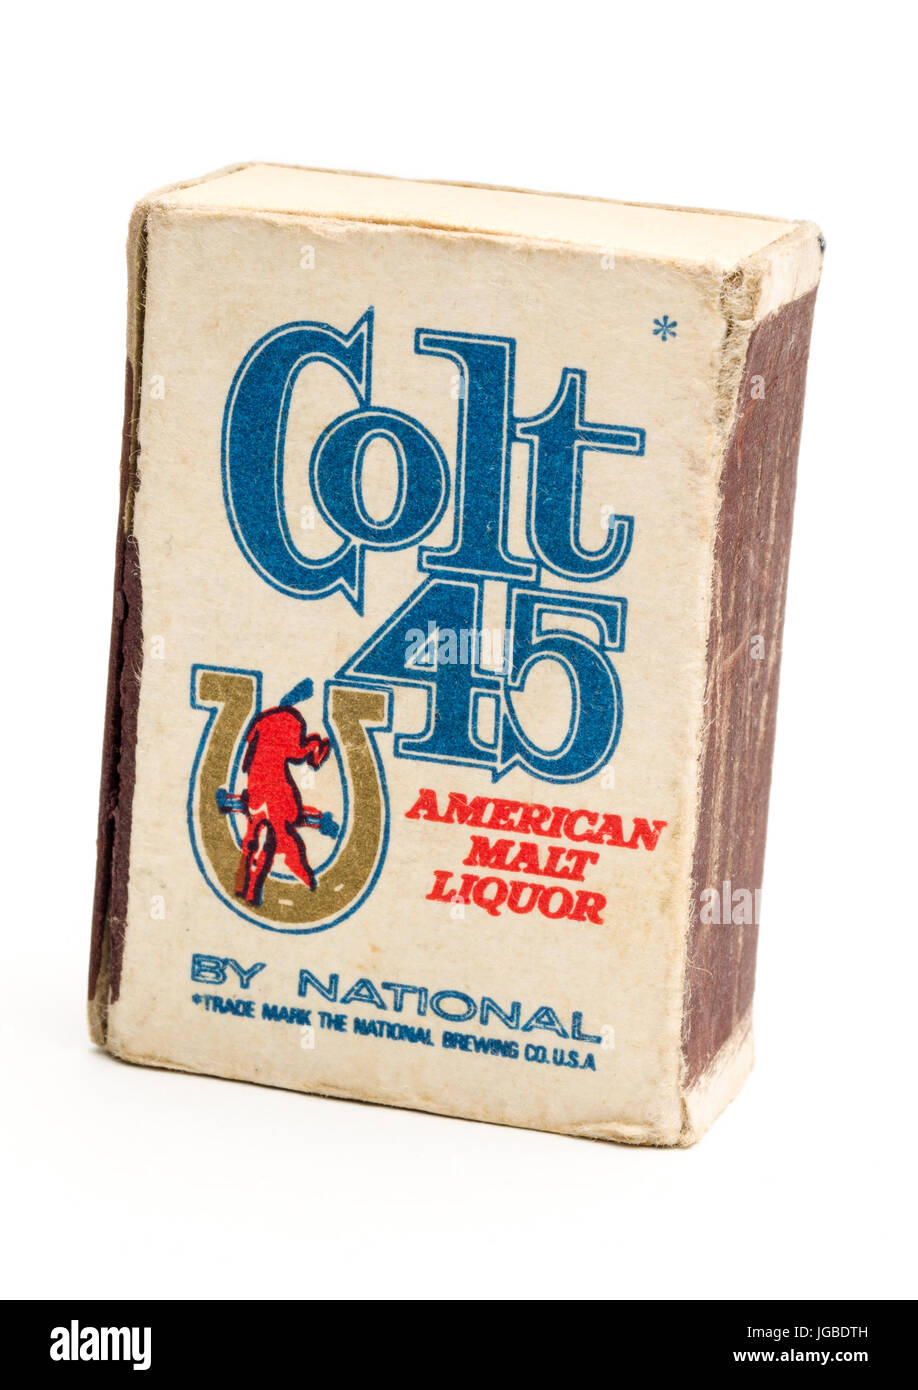 Colt bier -Fotos und -Bildmaterial in hoher Auflösung – Alamy